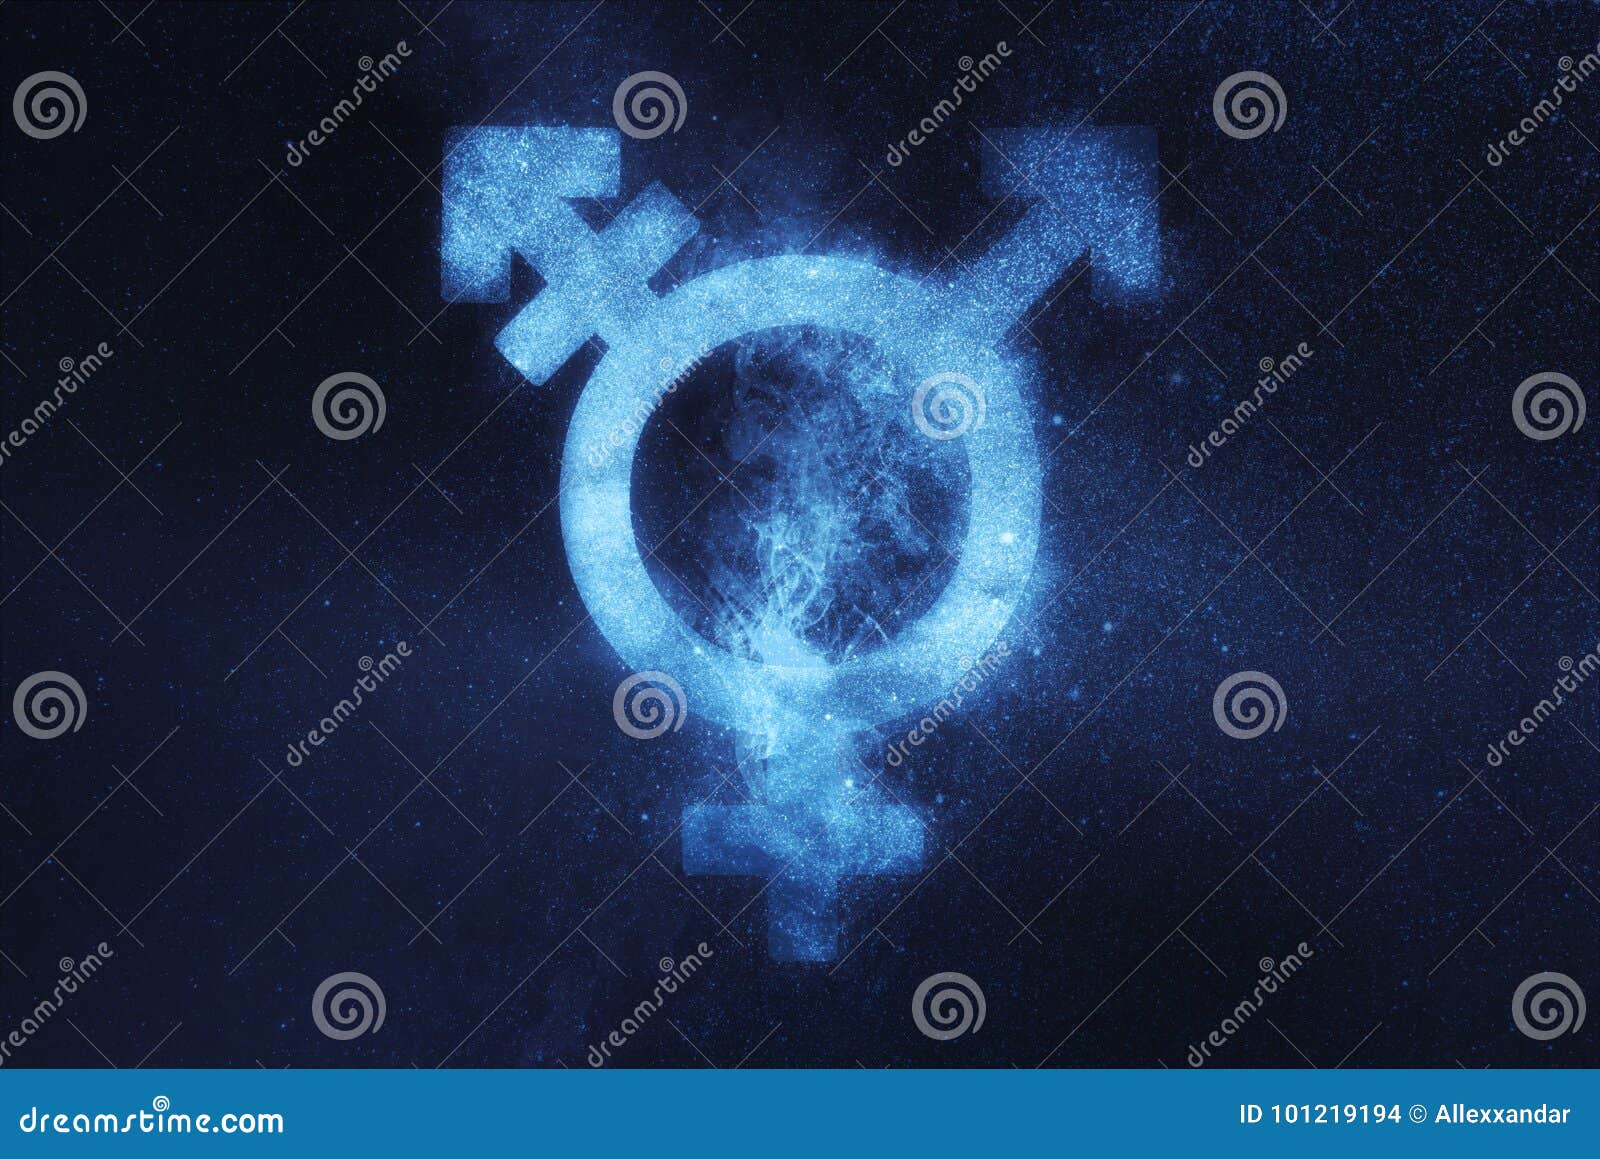 transgender . trans gender sign. abstract night sky backg